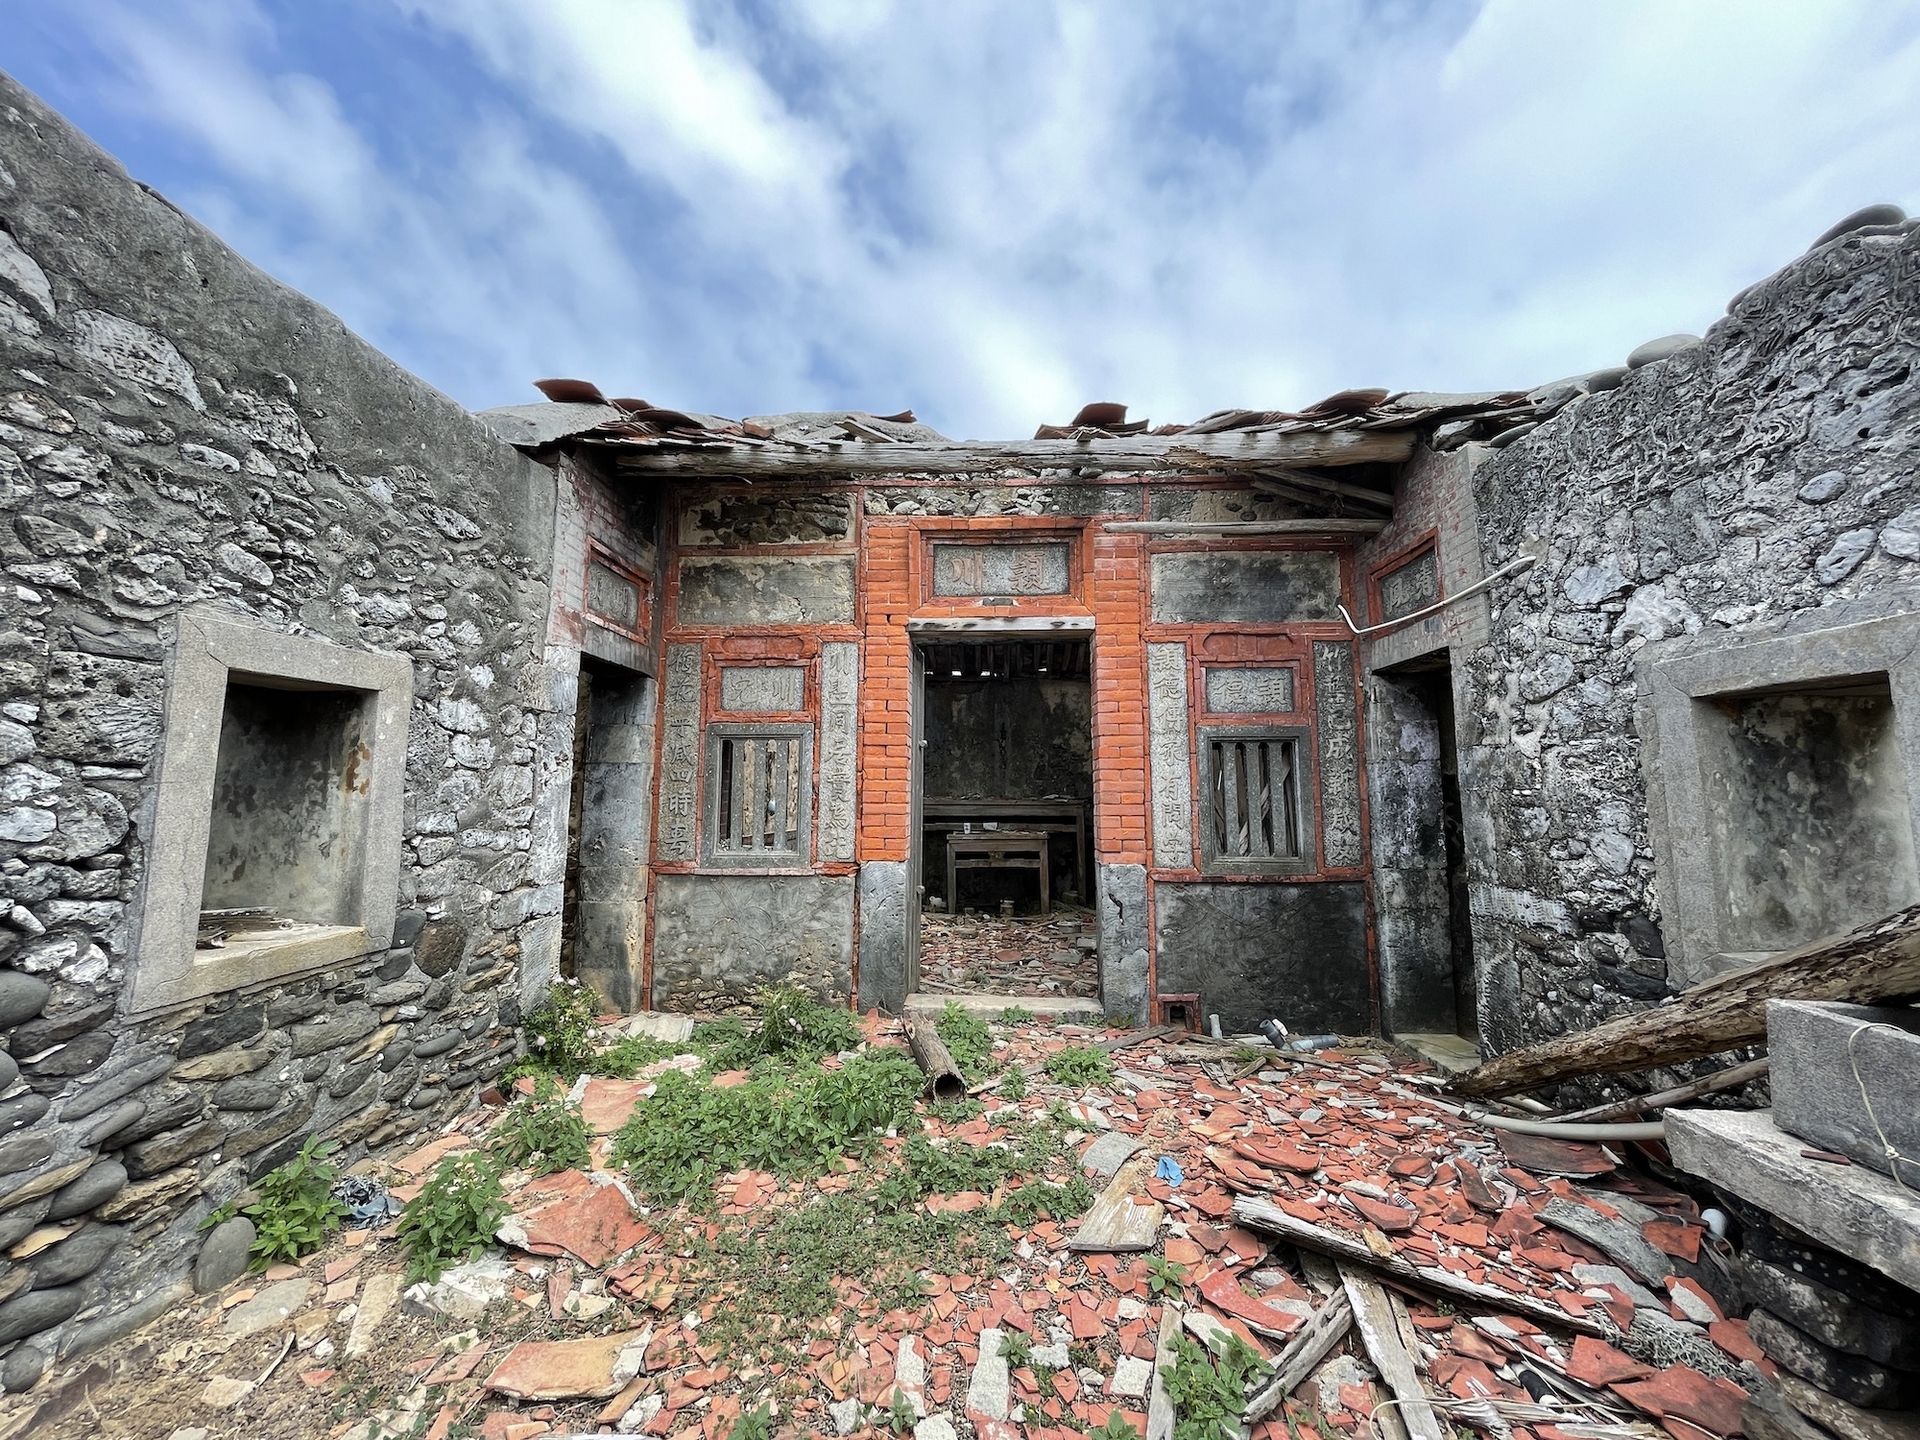 隨著時代變遷，島上居民多數已遷出，老舊的房子禁不起地震、風吹雨打，是急需被保護的珍貴歷史碎片。（圖片由活水文化事業有限公司提供）